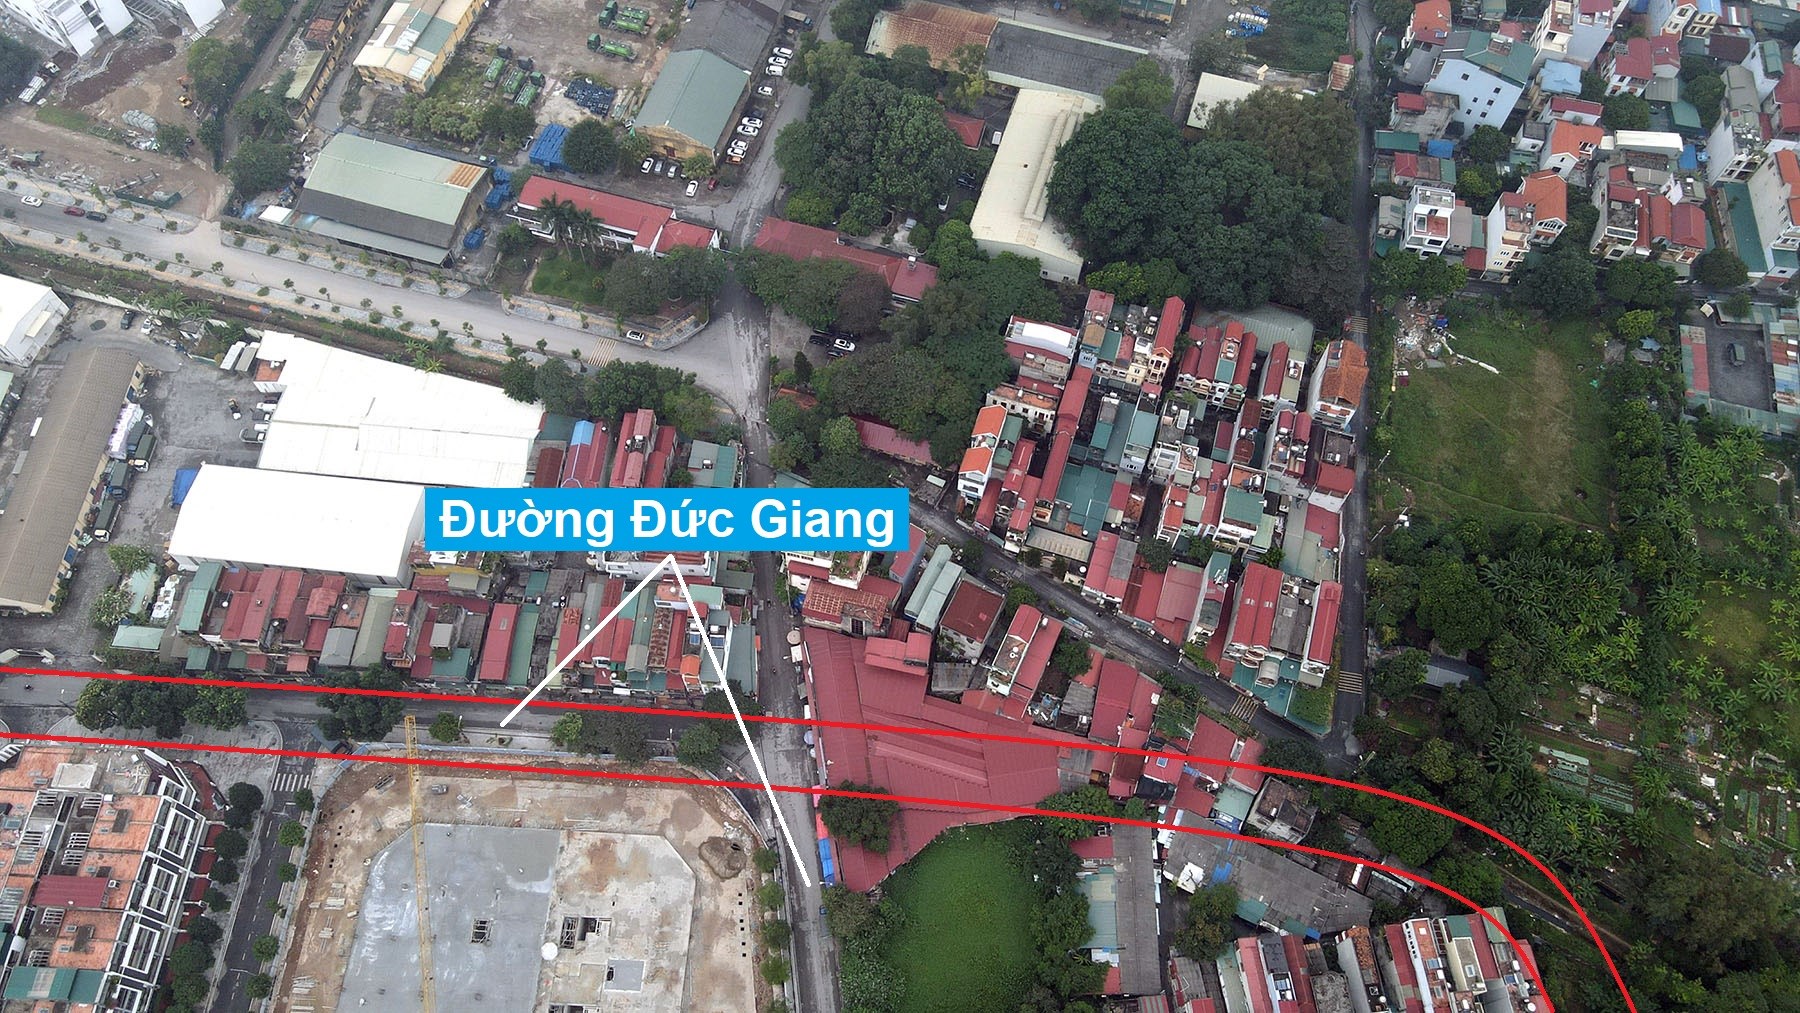 Những tuyến đường đang và sẽ mở qua khu nhà ở Bình Minh Garden